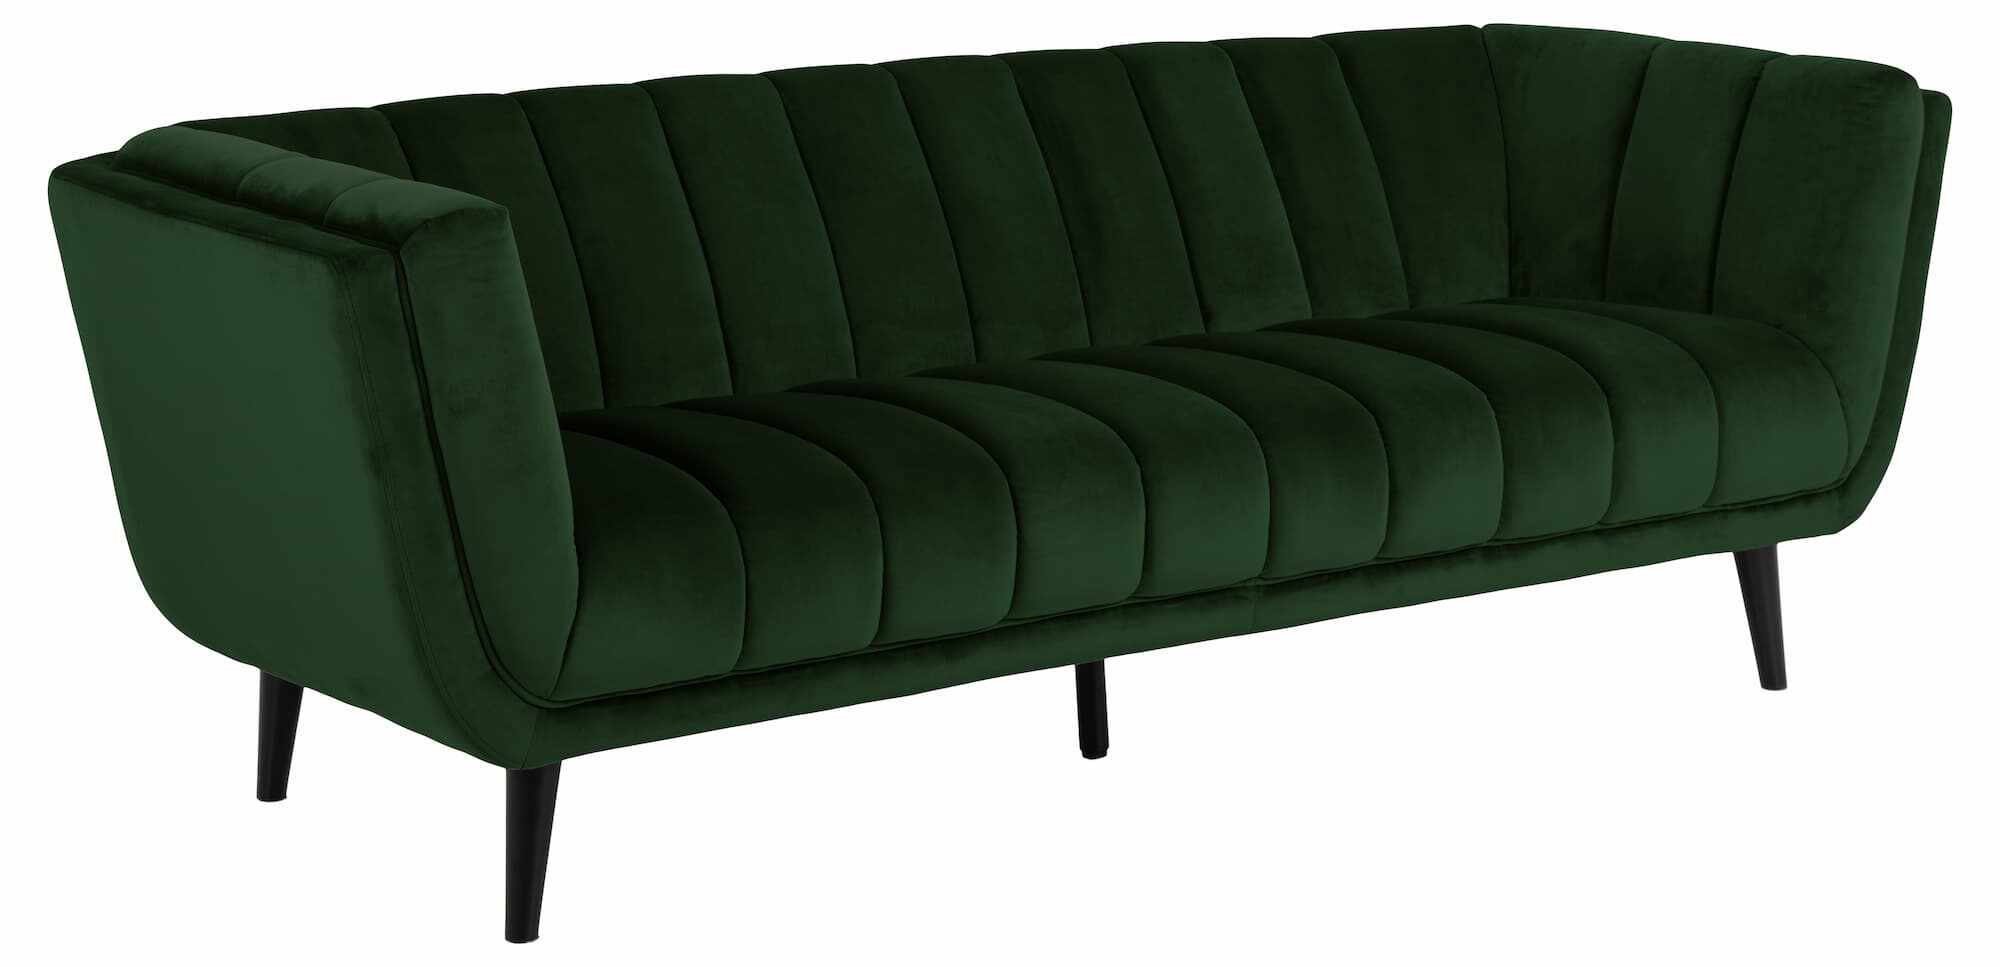 Canapea fixa tapitata cu stofa, 3 locuri Tampa Velvet Verde, l219,5xA86,5xH76,5 cm